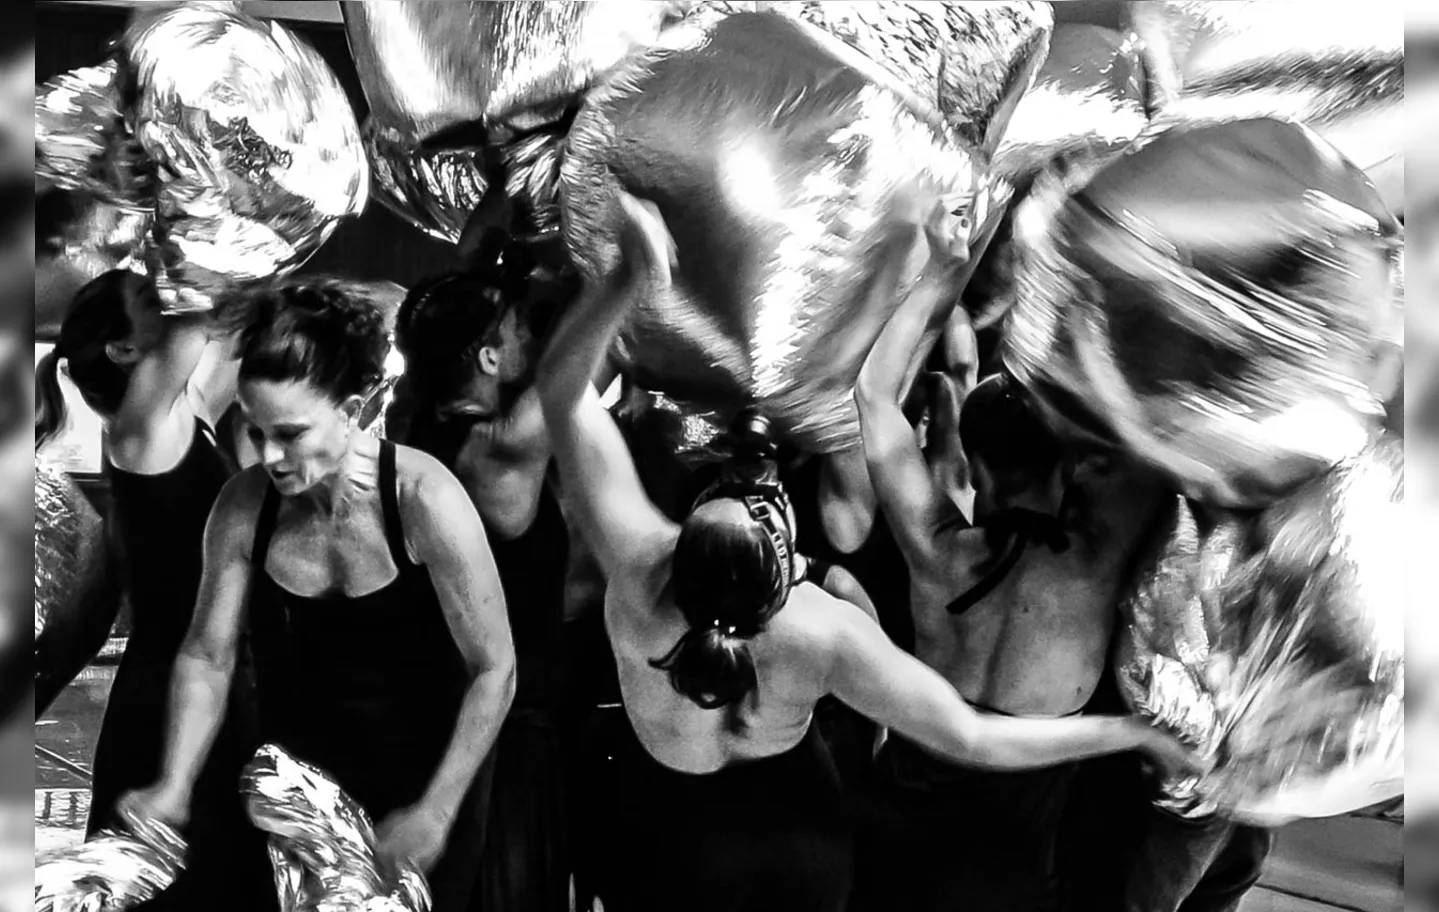 No palco, os bailarinos atravessam escombros na tentativa de encontrar modos de sobrevivência e resistência